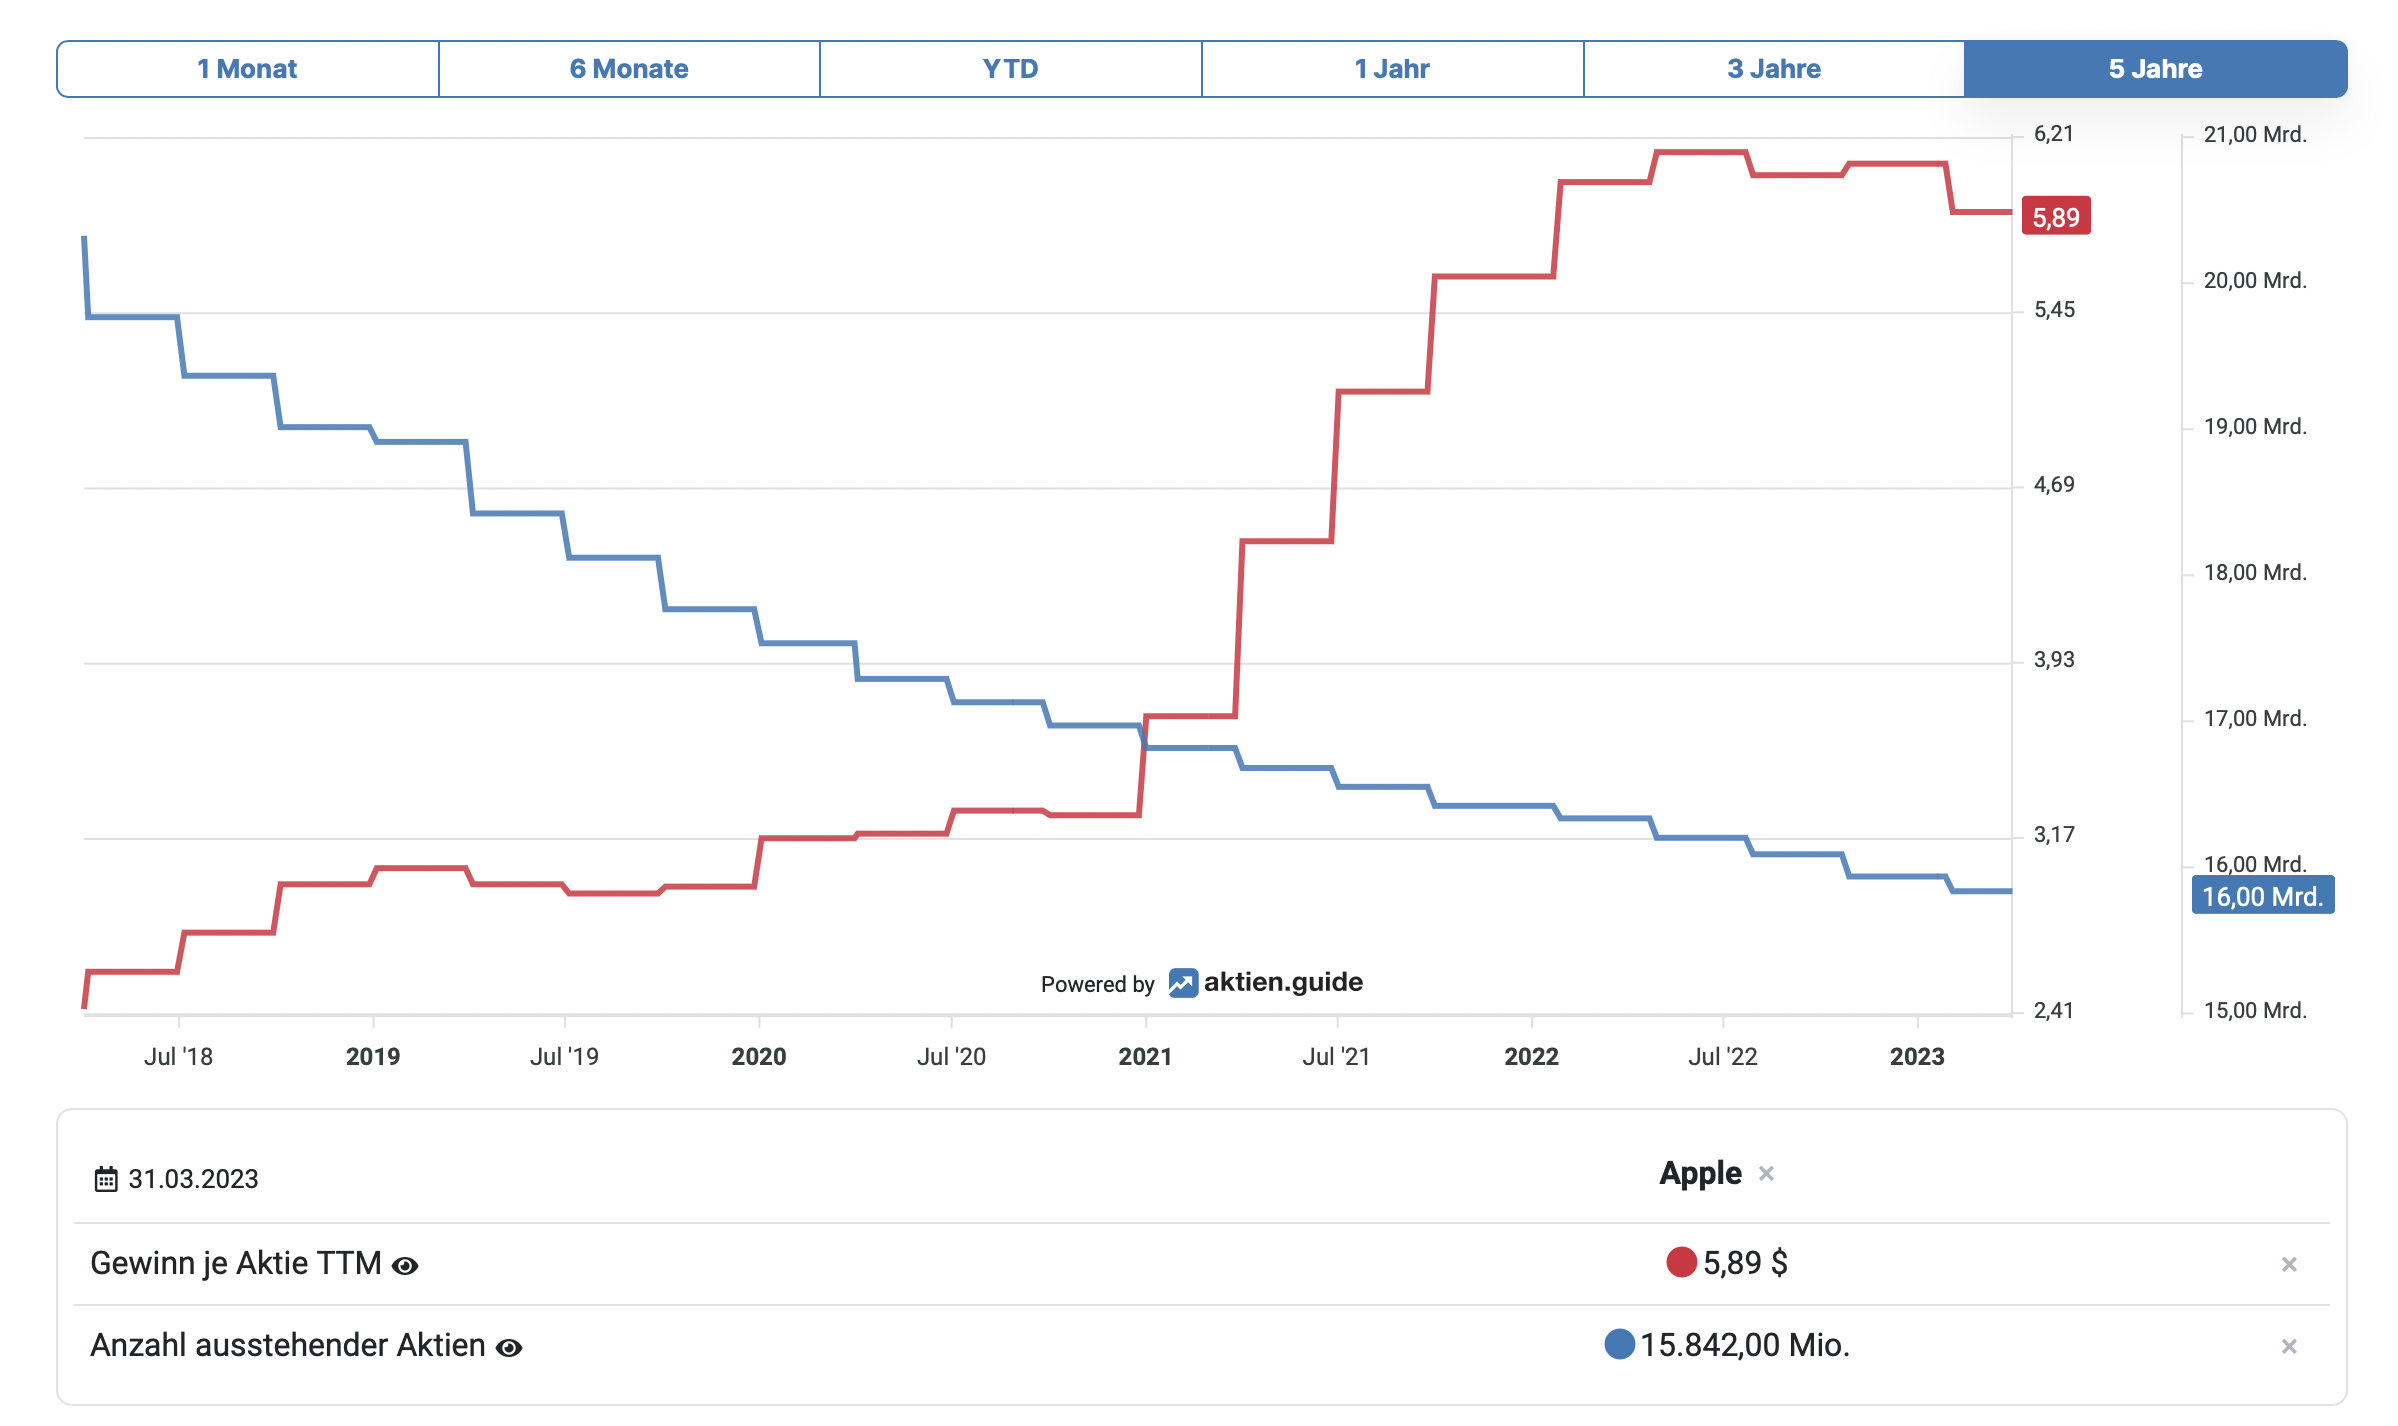 Diese Grafik zeigt die Entwicklung der ausstehenden Aktien von Apple im Vergleich zum Gewinn je Aktie im Zeitraum von fünf Jahren.